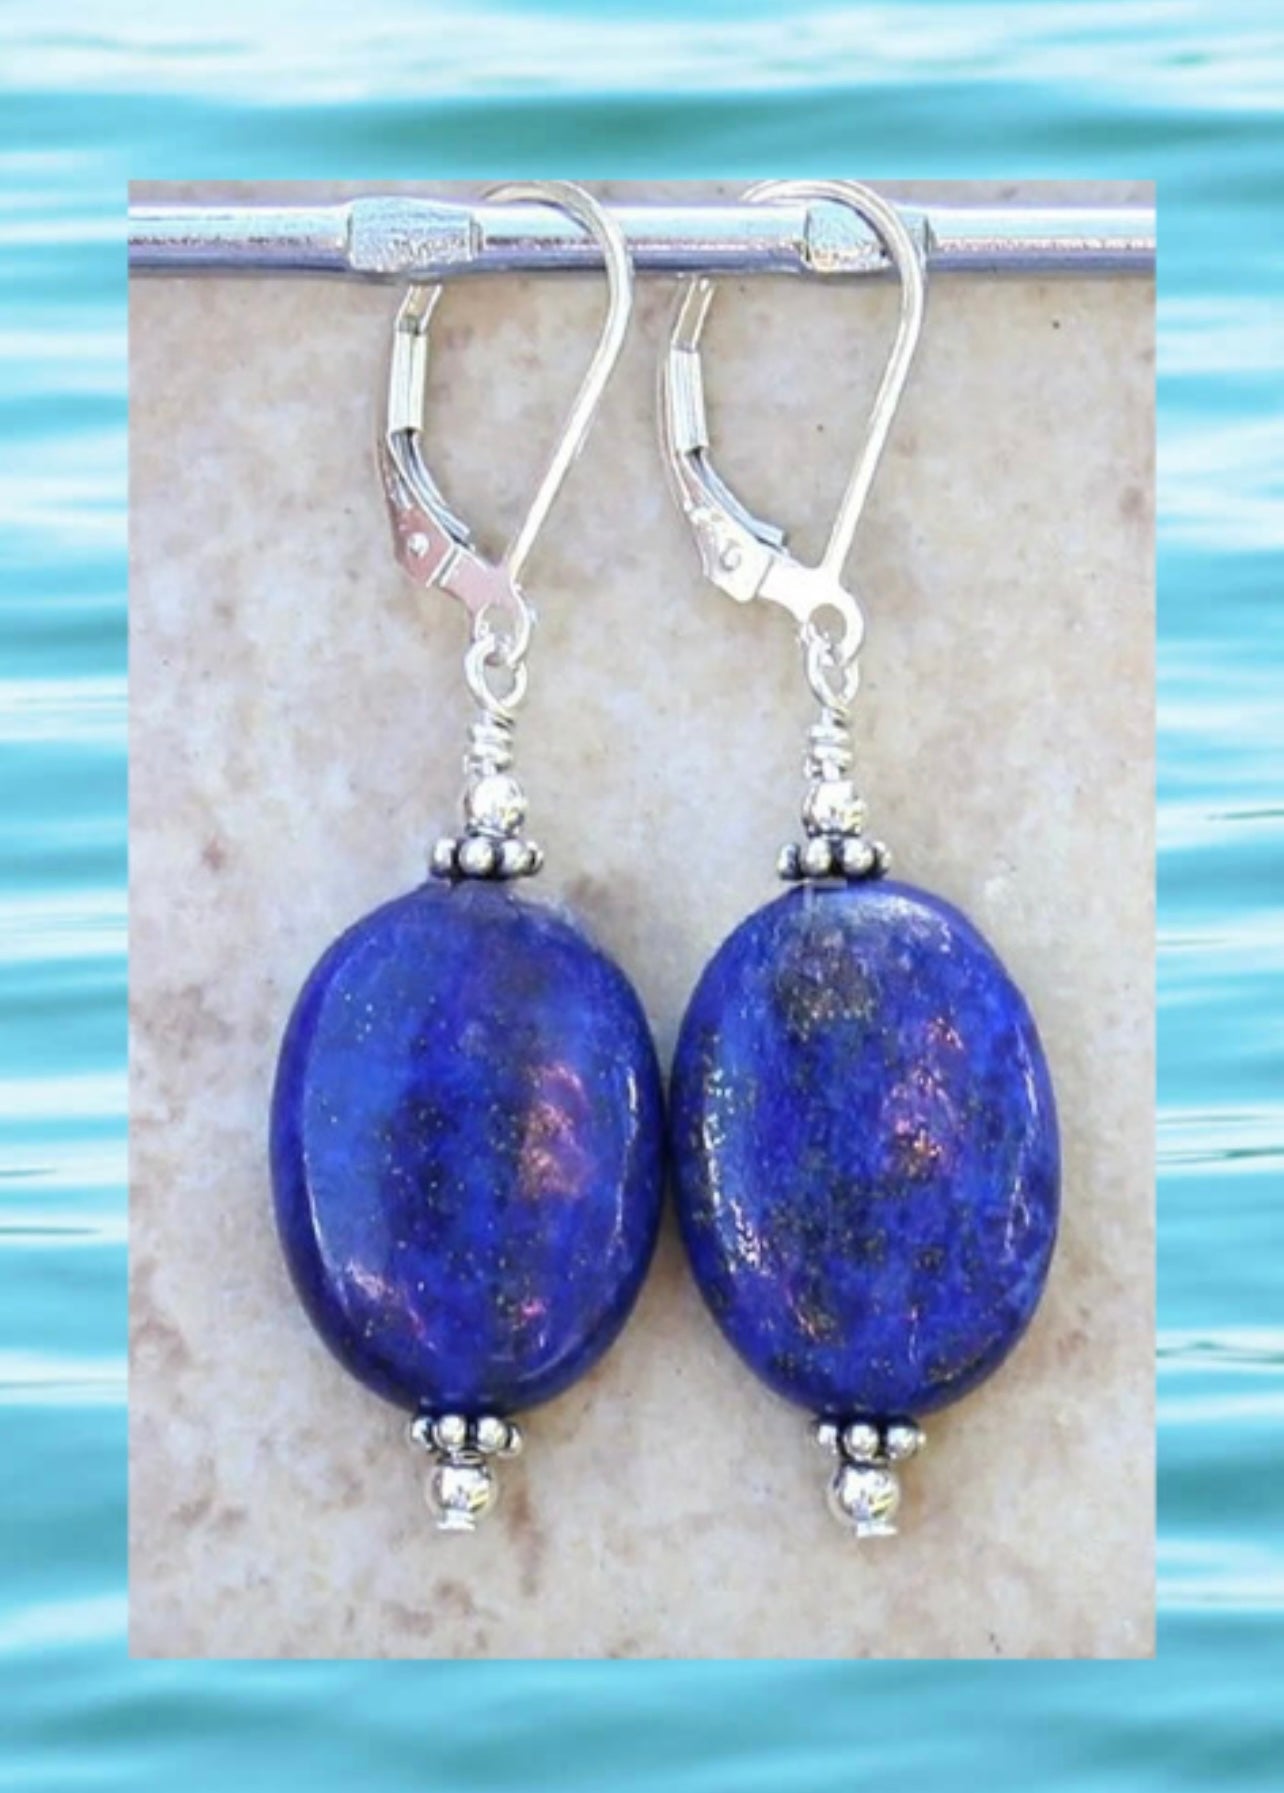 Blue Lapis Lazuli Gemstone Sterling Silver Dangle Earrings 2”